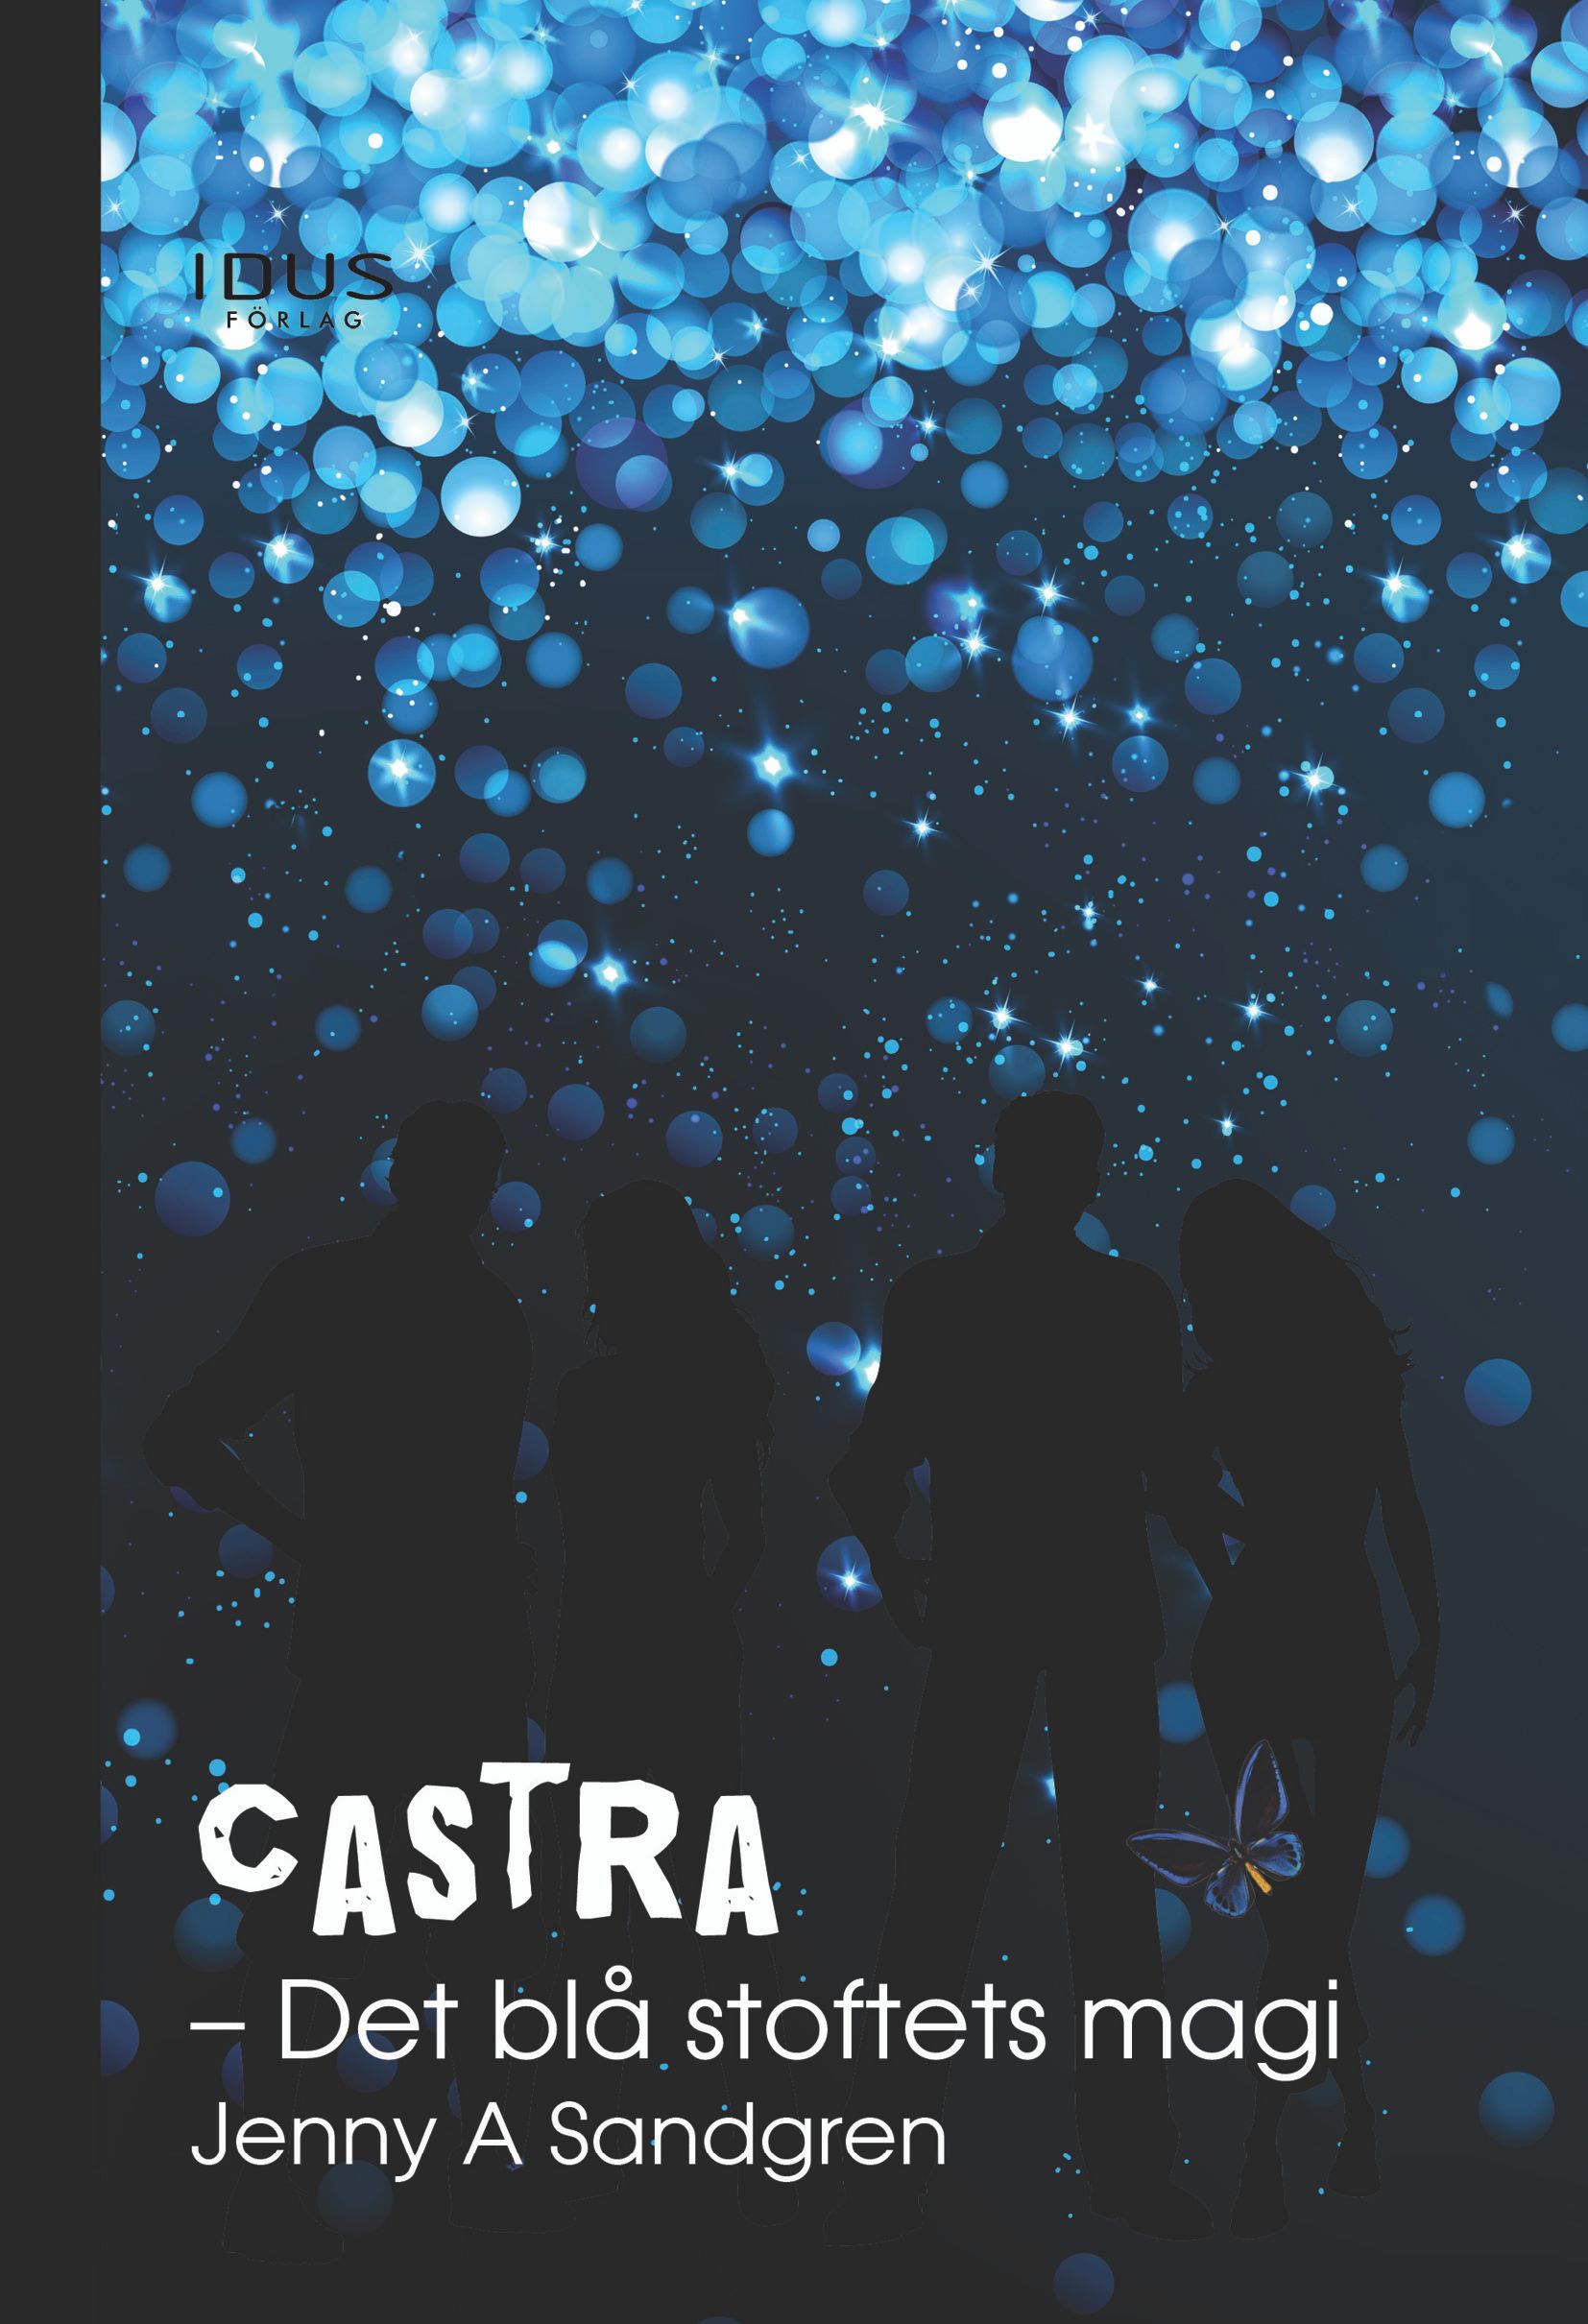 Castra. Det blå stoftets magi, e-bok av Jenny A Sandgren